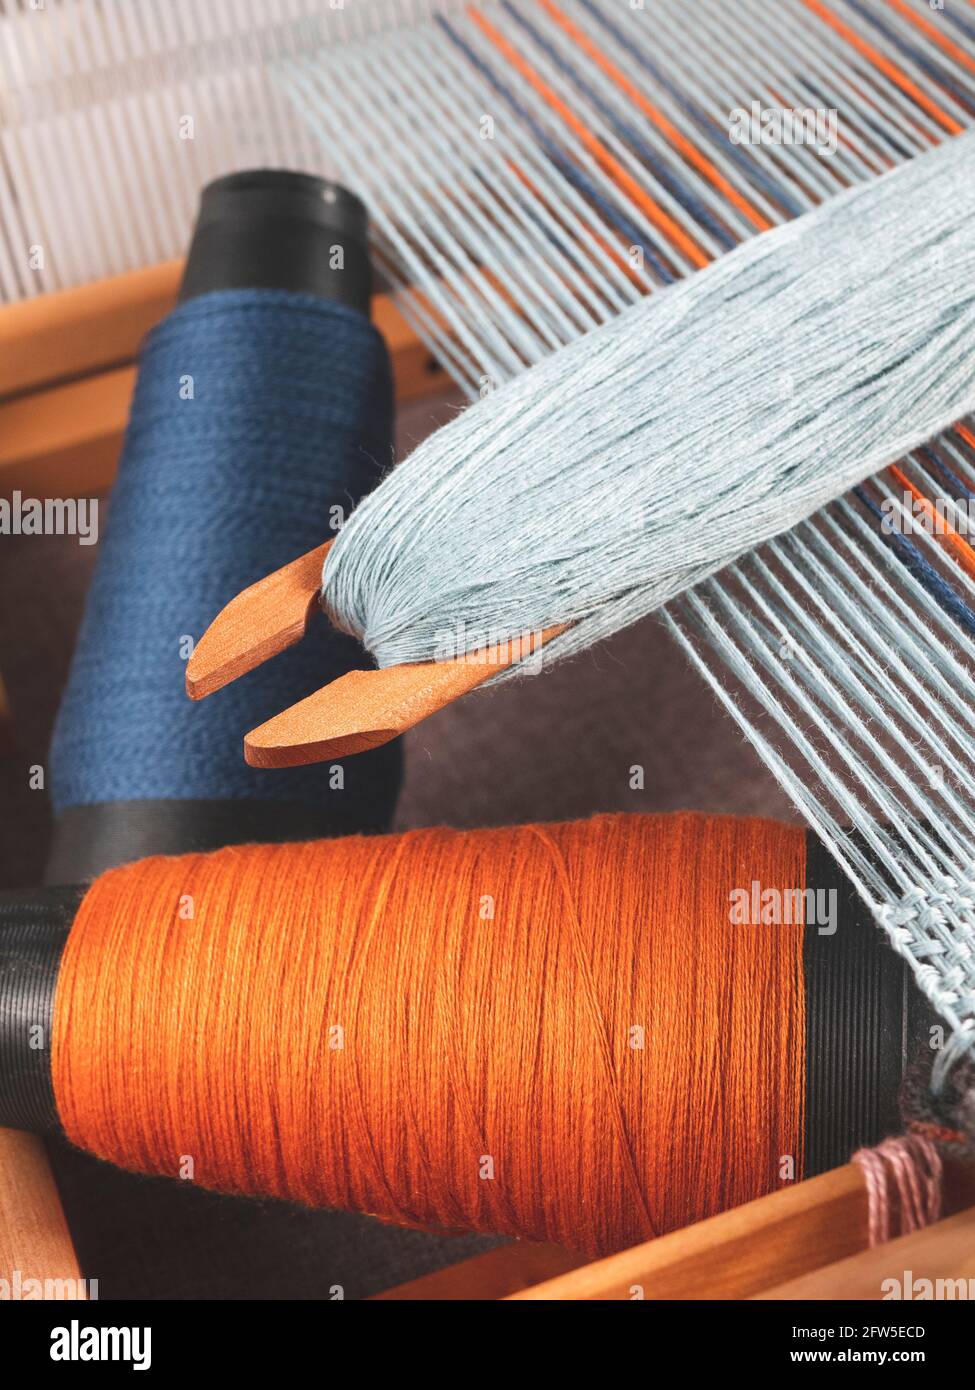 Shuttle mit blauem Faden und zwei Spulen mit Indigo- und Orangengarnen zum Weben von gestreiftem Textil, aufrechtes Format Stockfoto